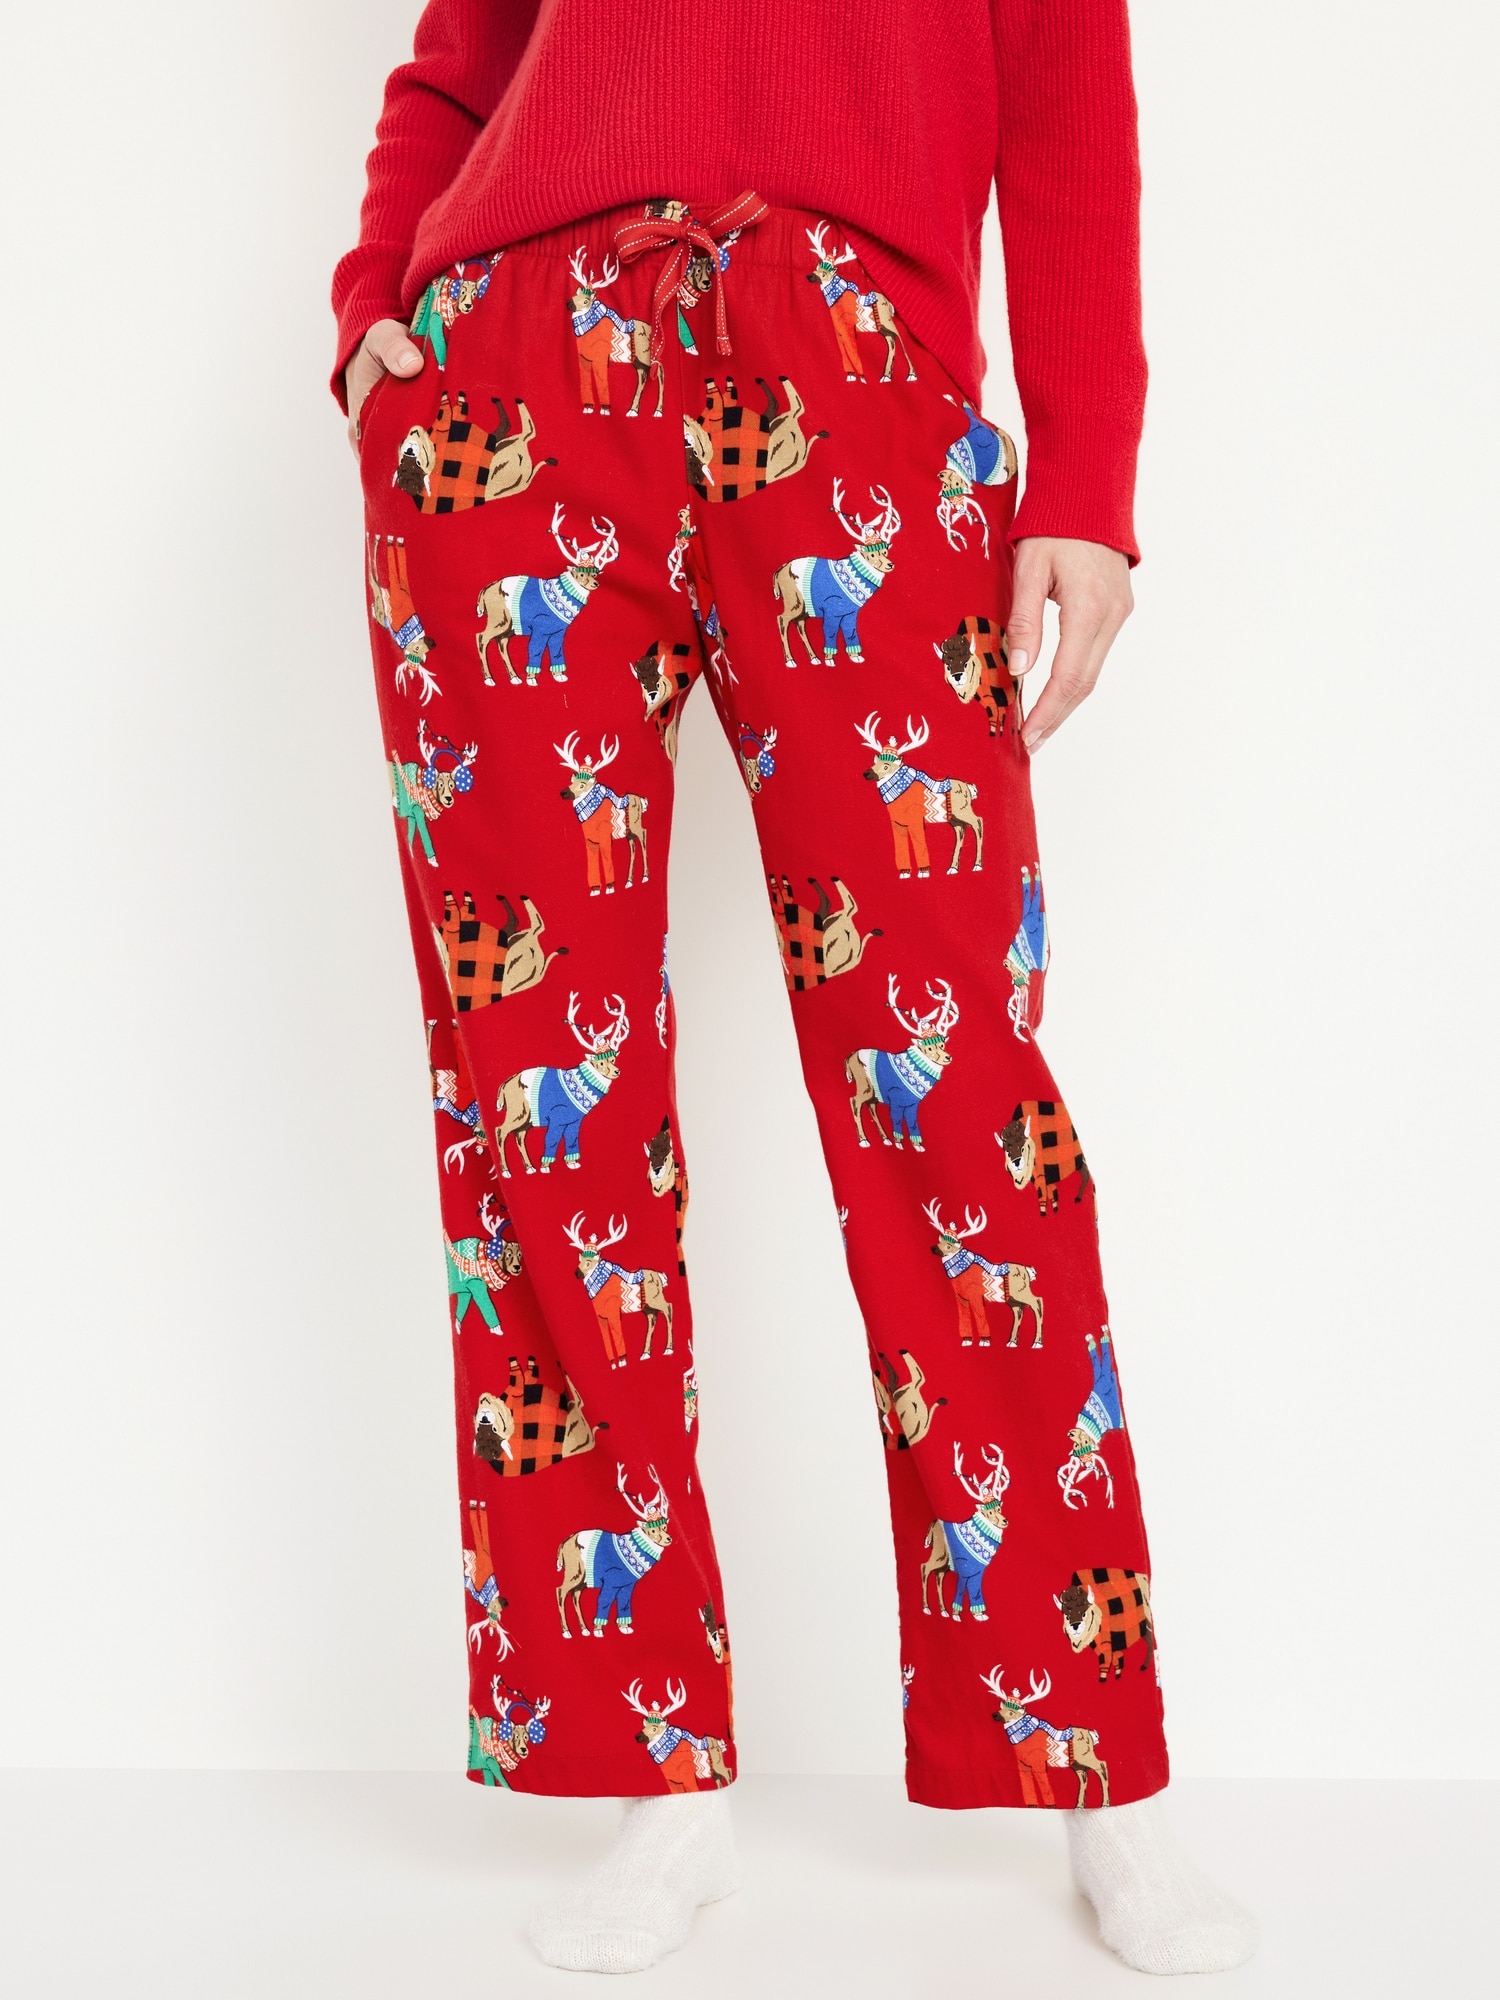 Mid-Rise Flannel Pajama Pants